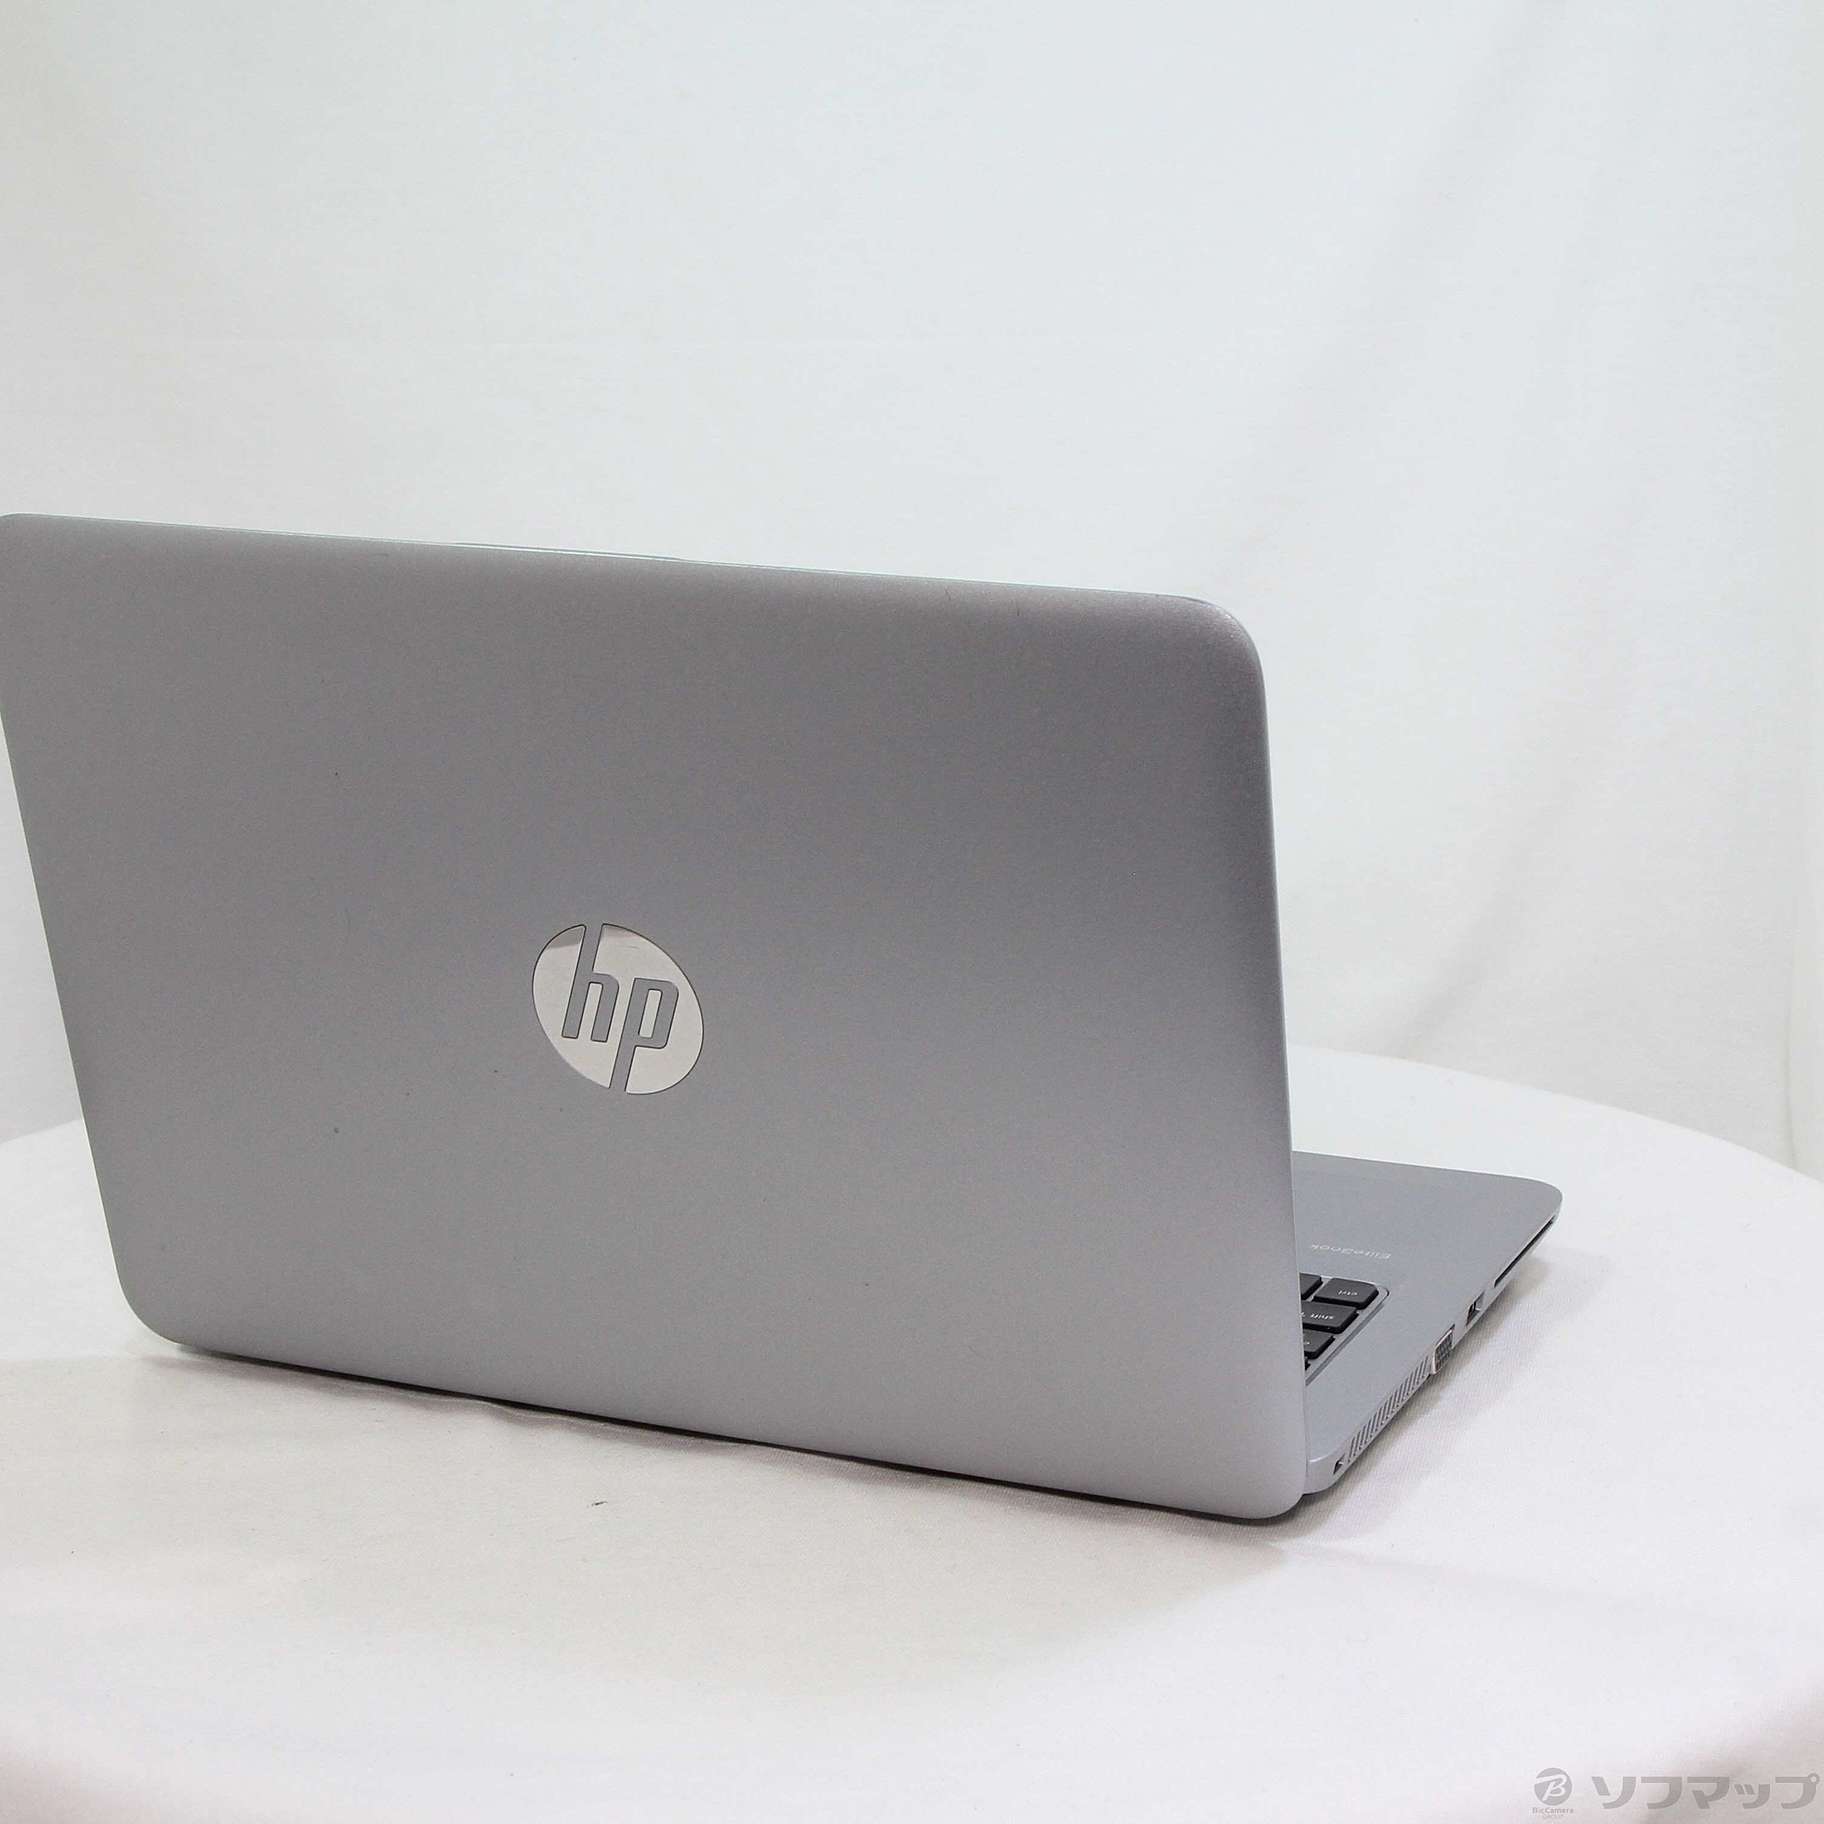 中古】セール対象品 HP EliteBook 820 G3 W2P46PA#ABJ 〔Windows 10